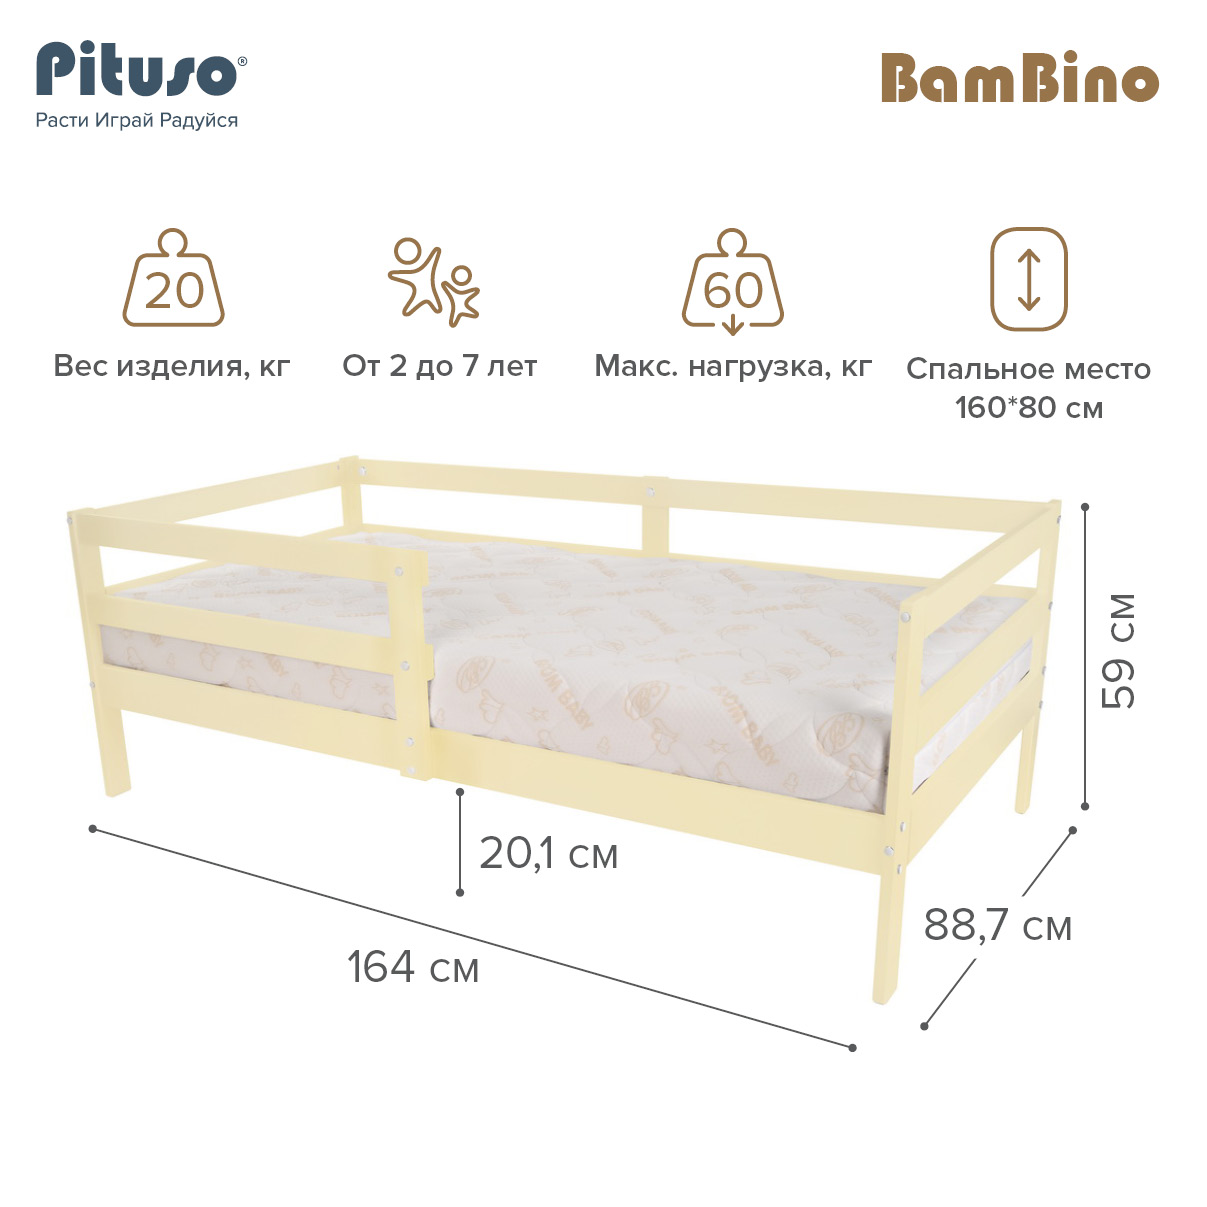 Кровать подростковая Pituso BamBino Ваниль кровать подростковая pituso bambino капучино